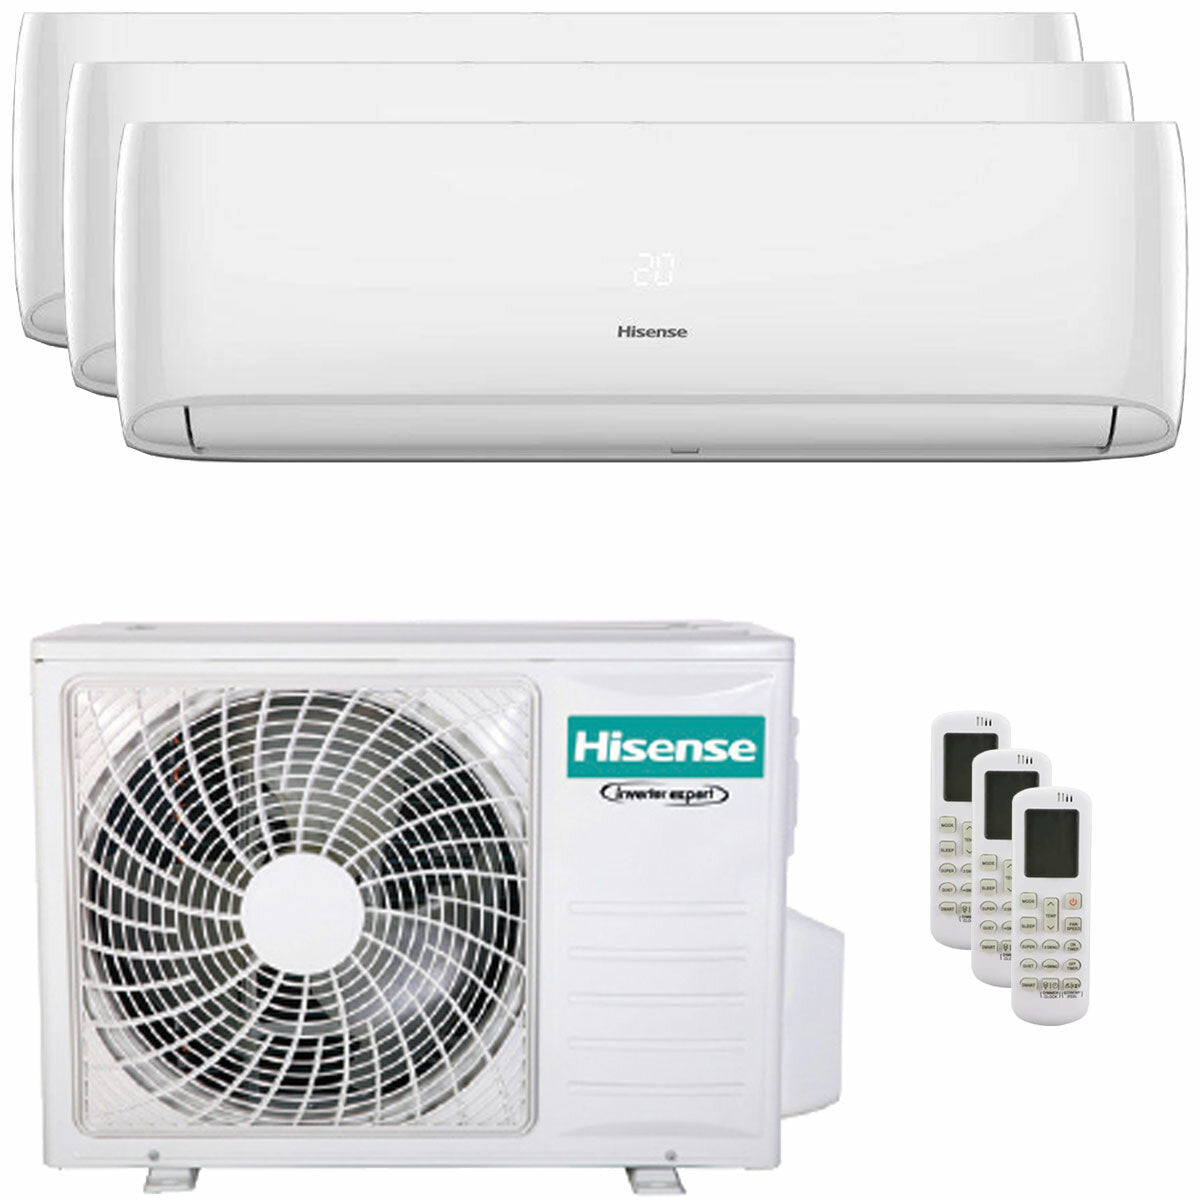 Hisense Hi-Comfort trial climatiseur split 9000+9000+9000 BTU onduleur A++ wifi unité extérieure 7.0 kW